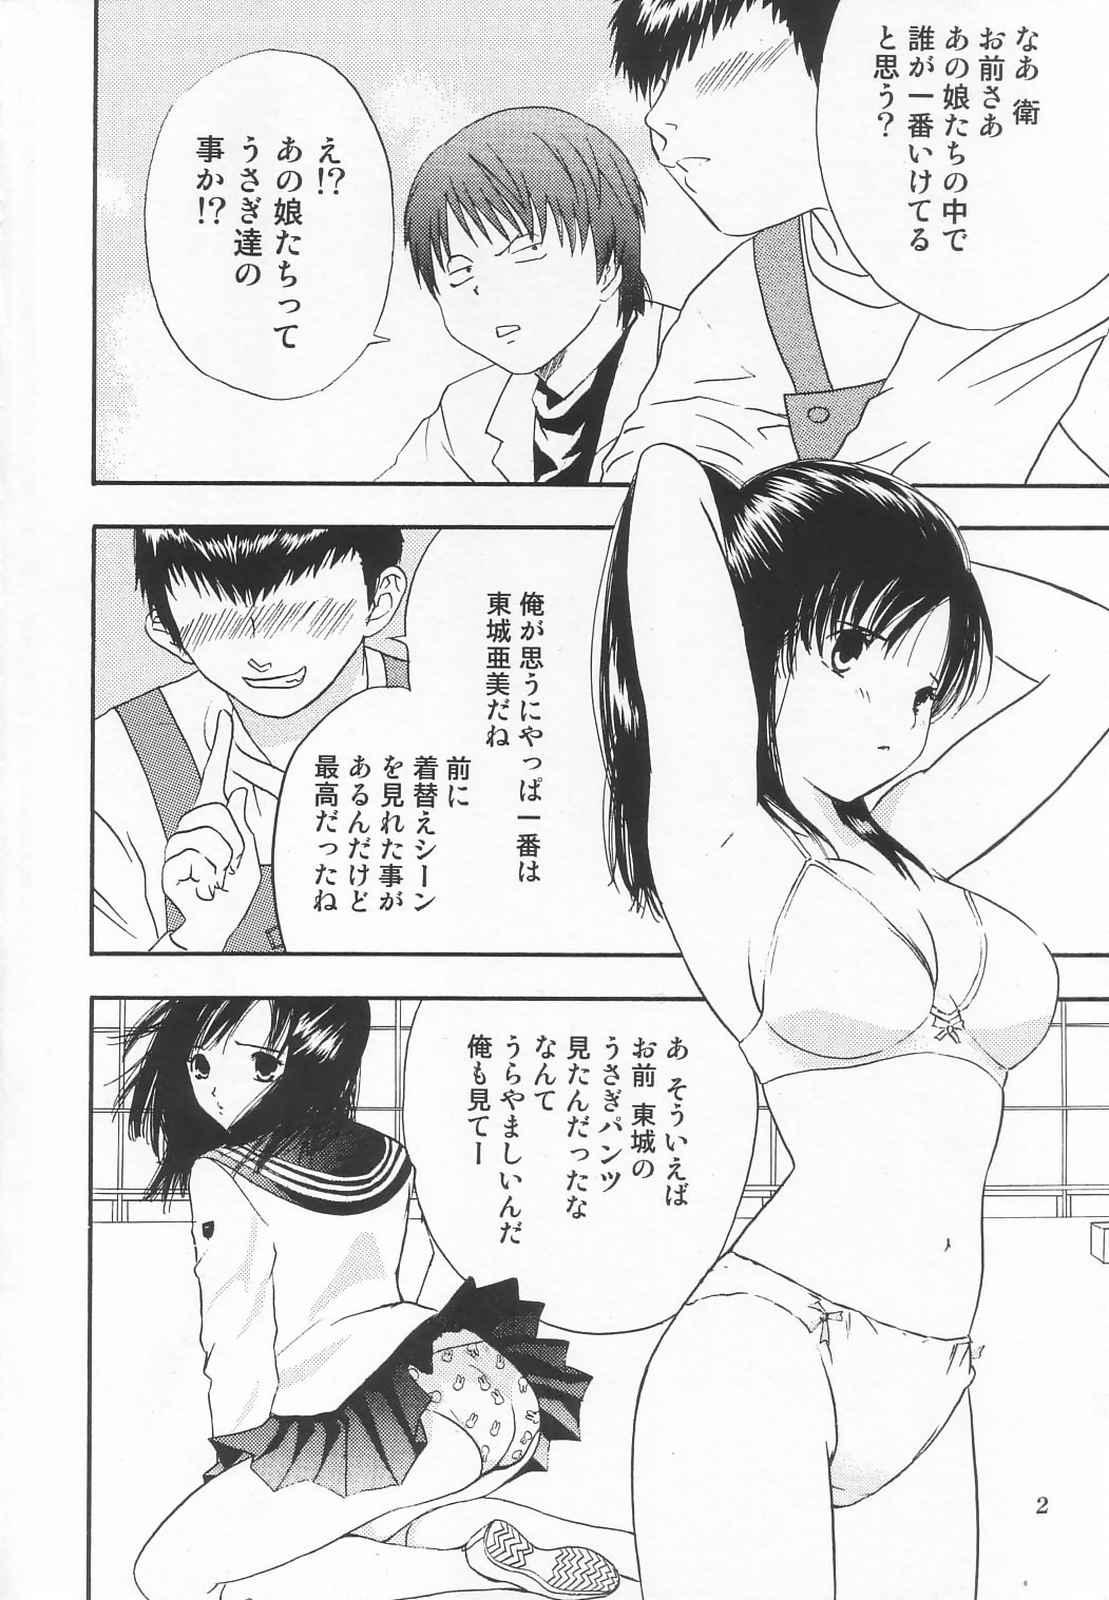 Show Tokusatsu Magazine x 2003 Fuyu Gou - Sailor moon Ichigo 100 Comedor - Page 4